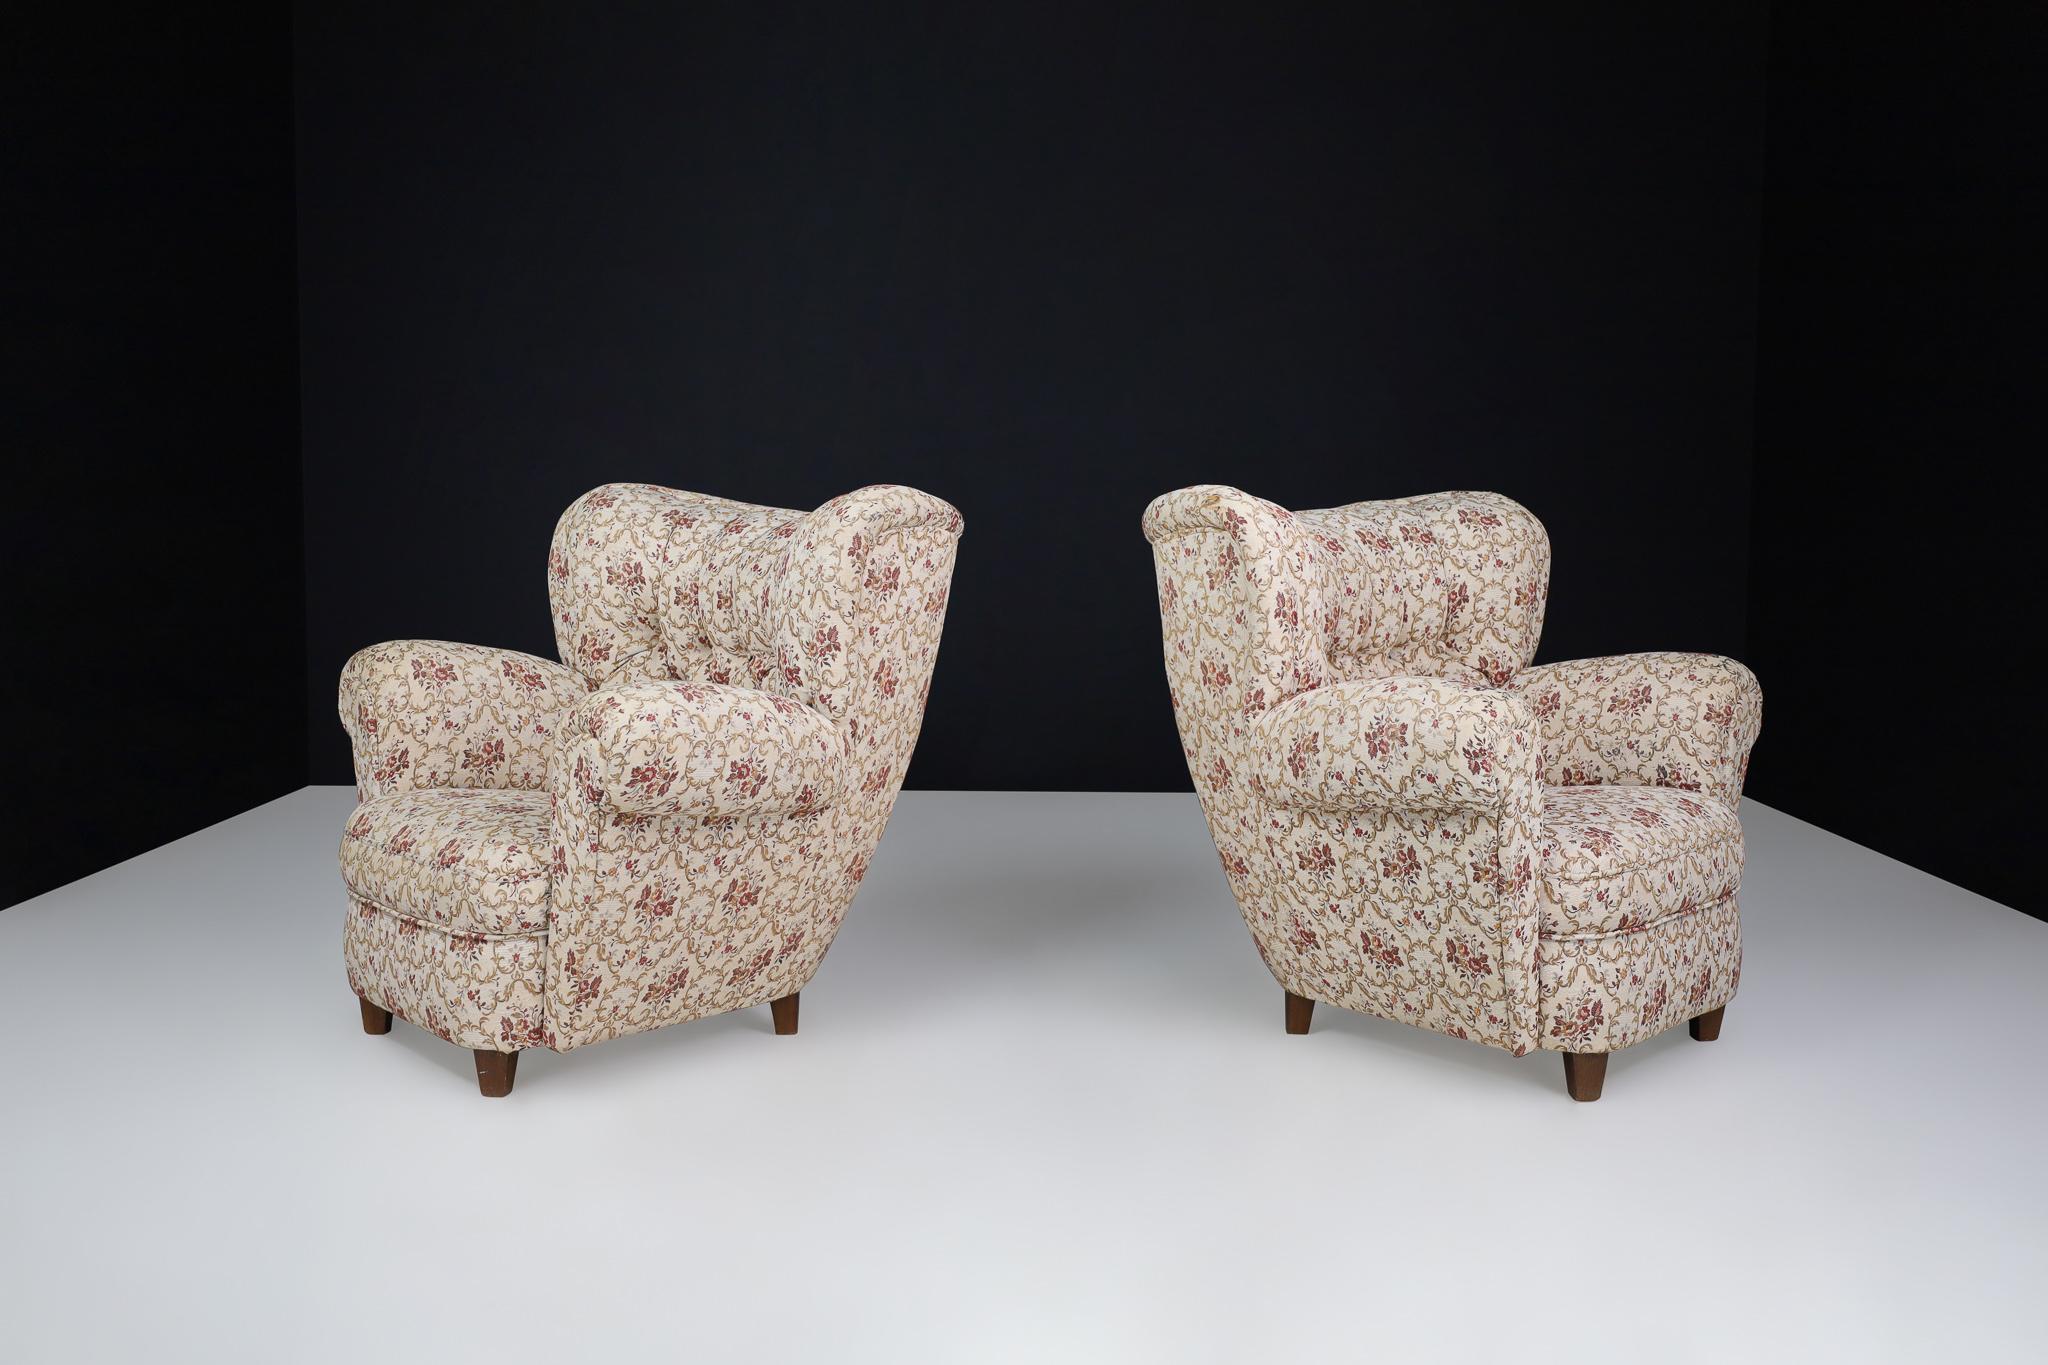 Grande paire de fauteuils Art-Déco en tapisserie florale d'origine, Praque 1930

Ces grands fauteuils Art déco ont été fabriqués à Prague dans les années 1930 et conservent leur revêtement floral d'origine. Leurs bords doux, leurs lignes touffetées